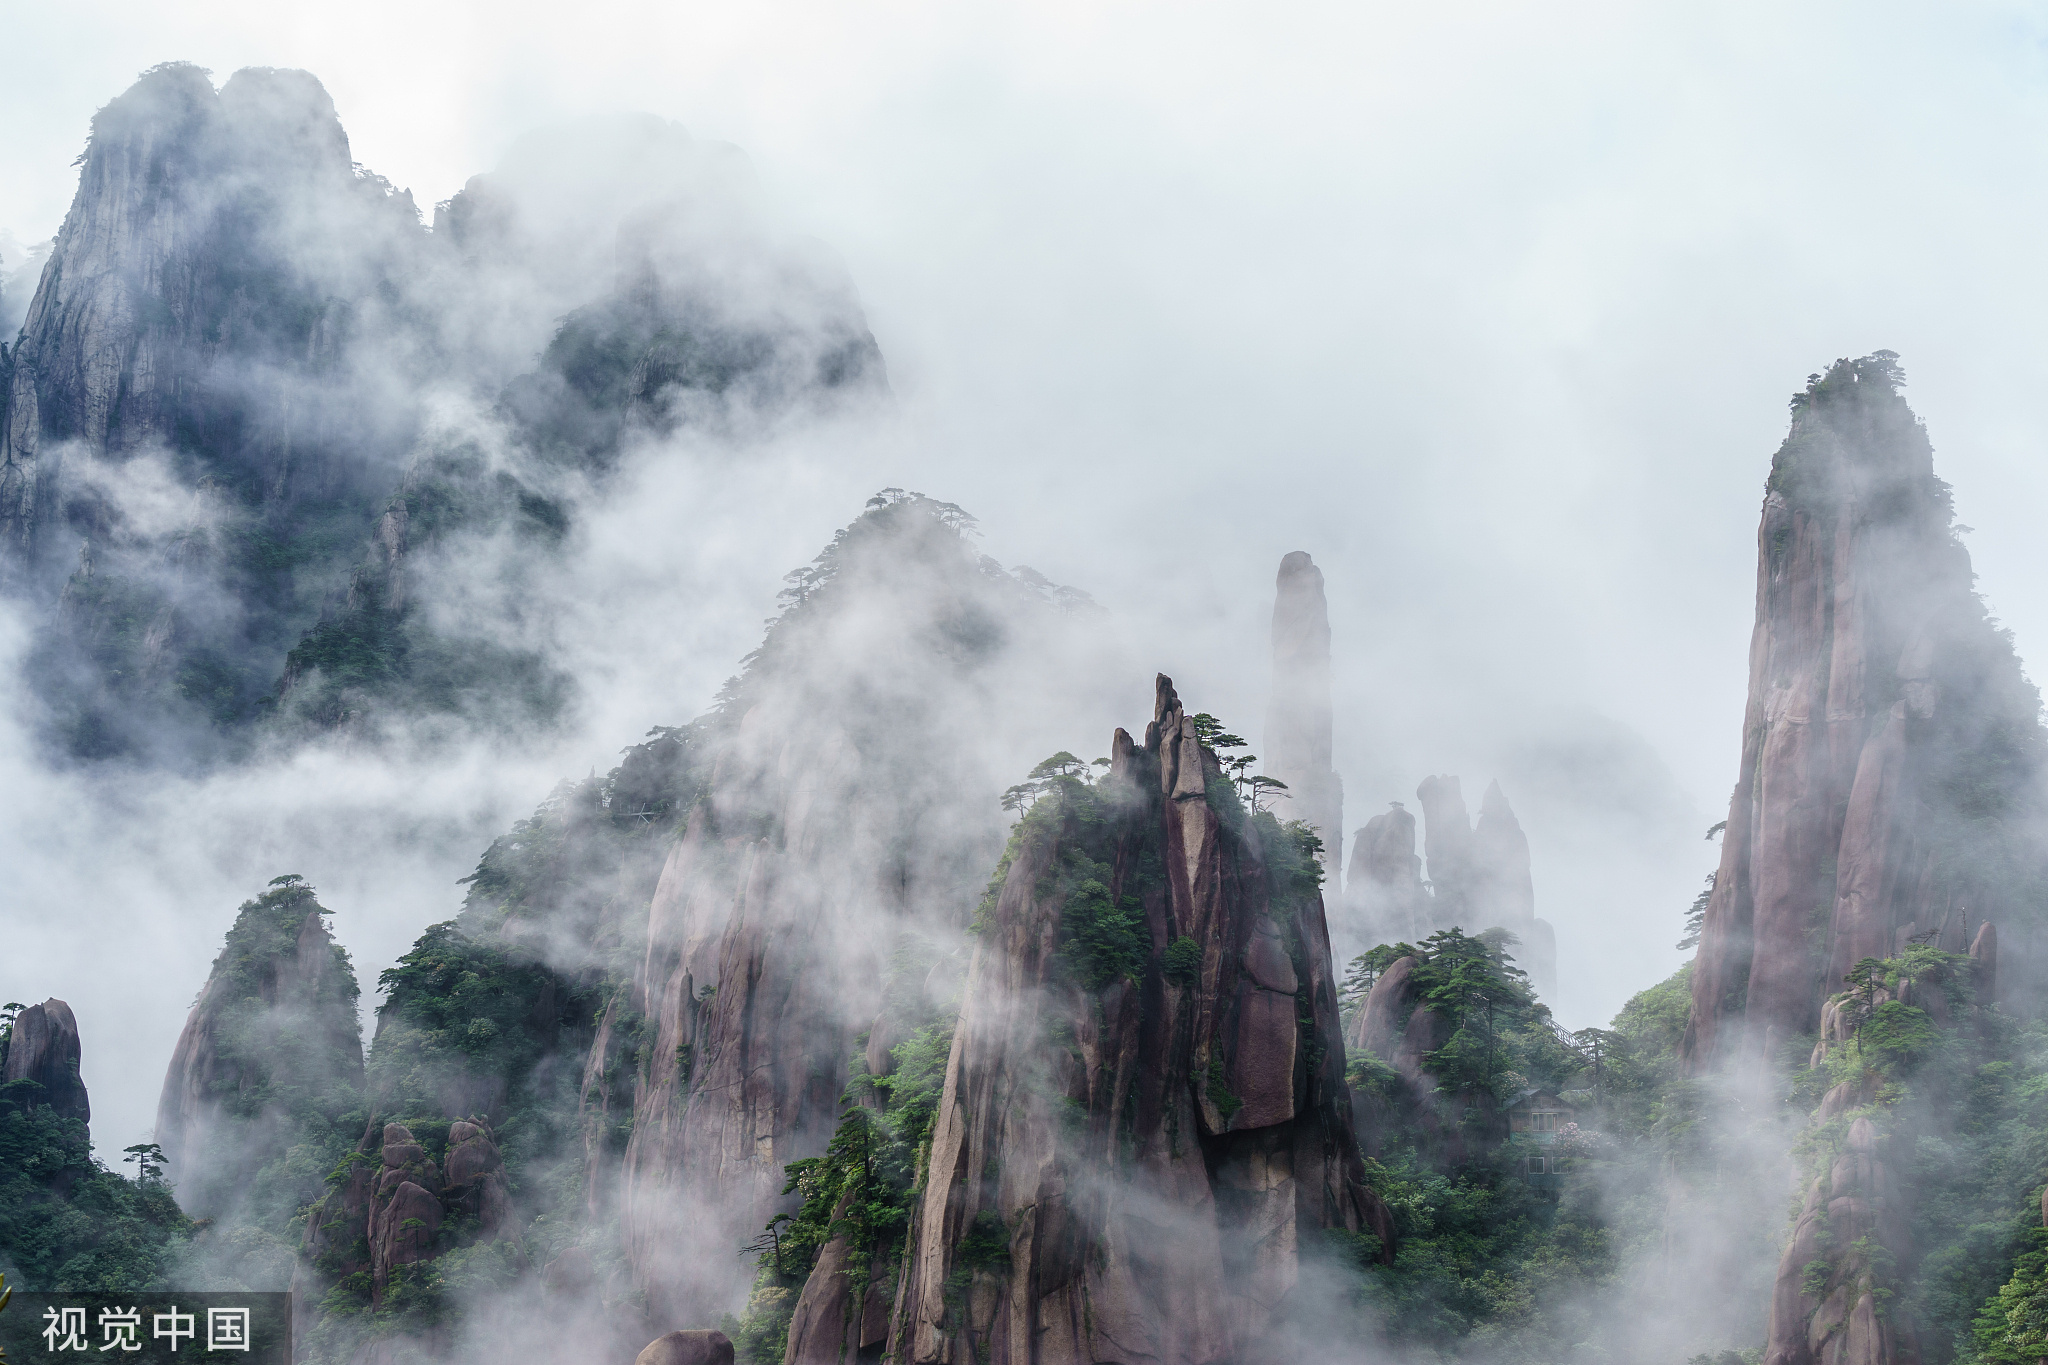 栩栩如生的花岗岩造型石与丰富的生态植被、远近变化的气候奇观相结合，创造了世界上独一无二的景观，呈现了引人入胜的自然美。游览三清山，仿佛邀游于清虚之境，出没于云雾之中。李一鸣/视觉中国